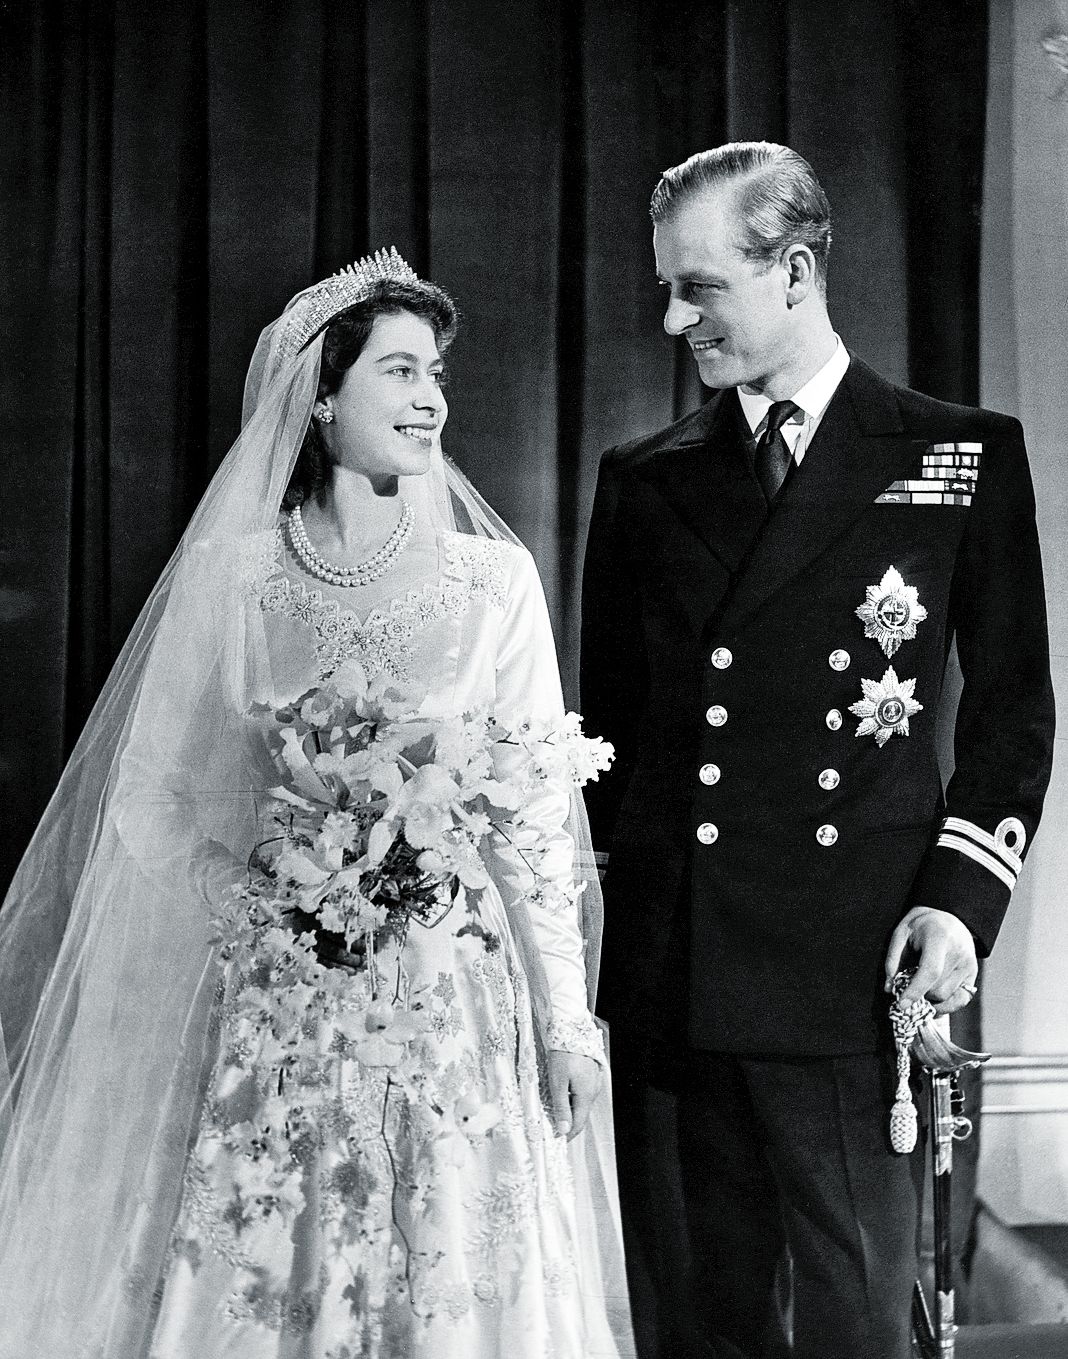 Королева Елизавета в тиаре королевы Марии со своим мужем принцем Филиппом, герцогом Эдинбургским, в Букингемском дворце после их свадьбы, 1947 г.